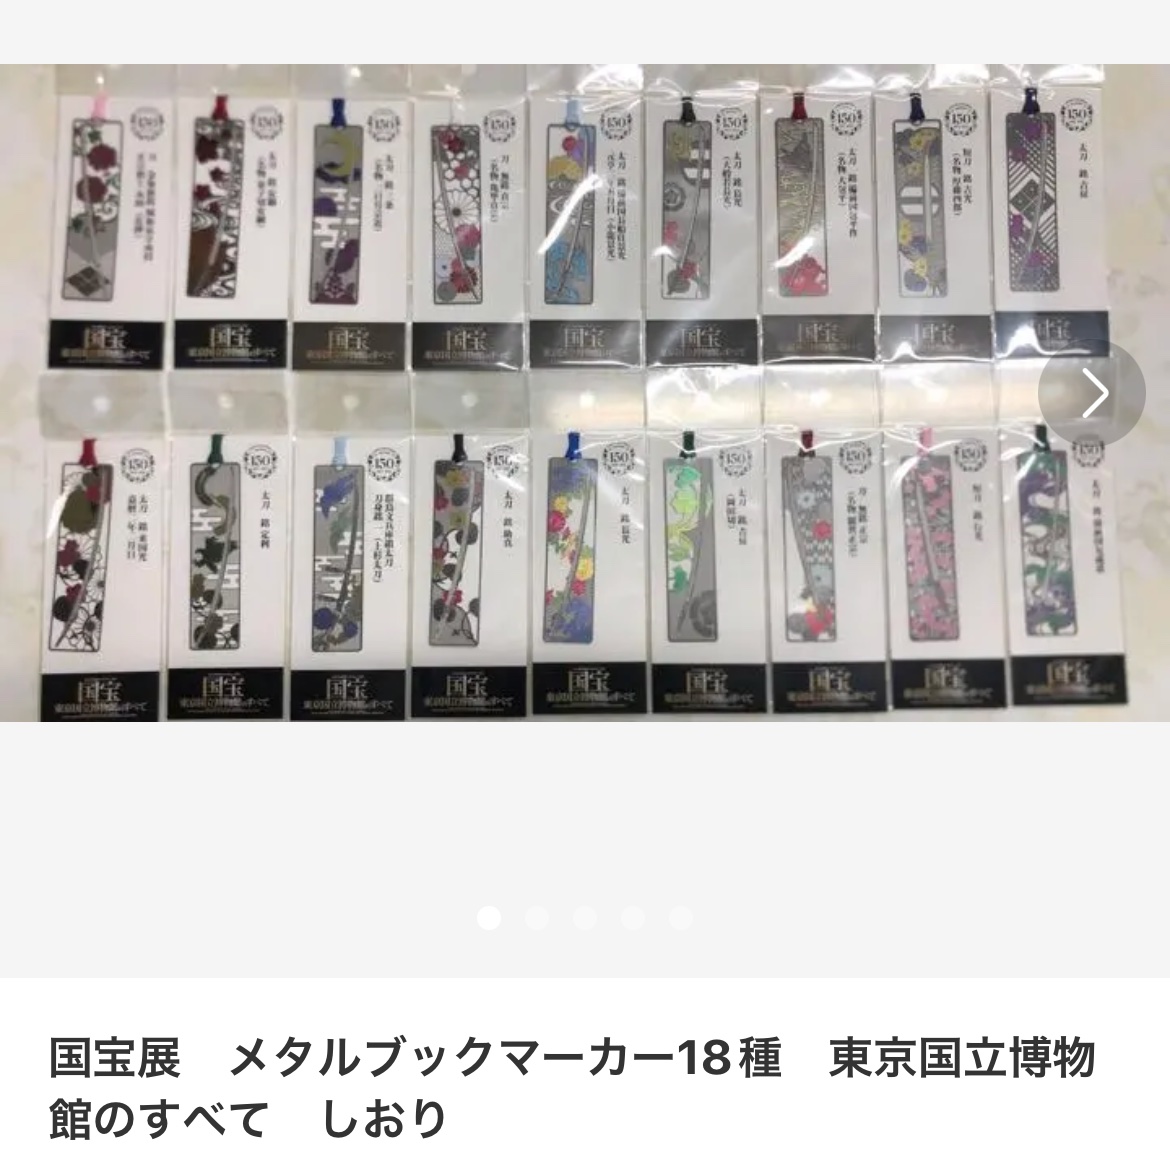 国宝展 メタルブックマーカー18種セット 東京国立博物館のすべて しおり-